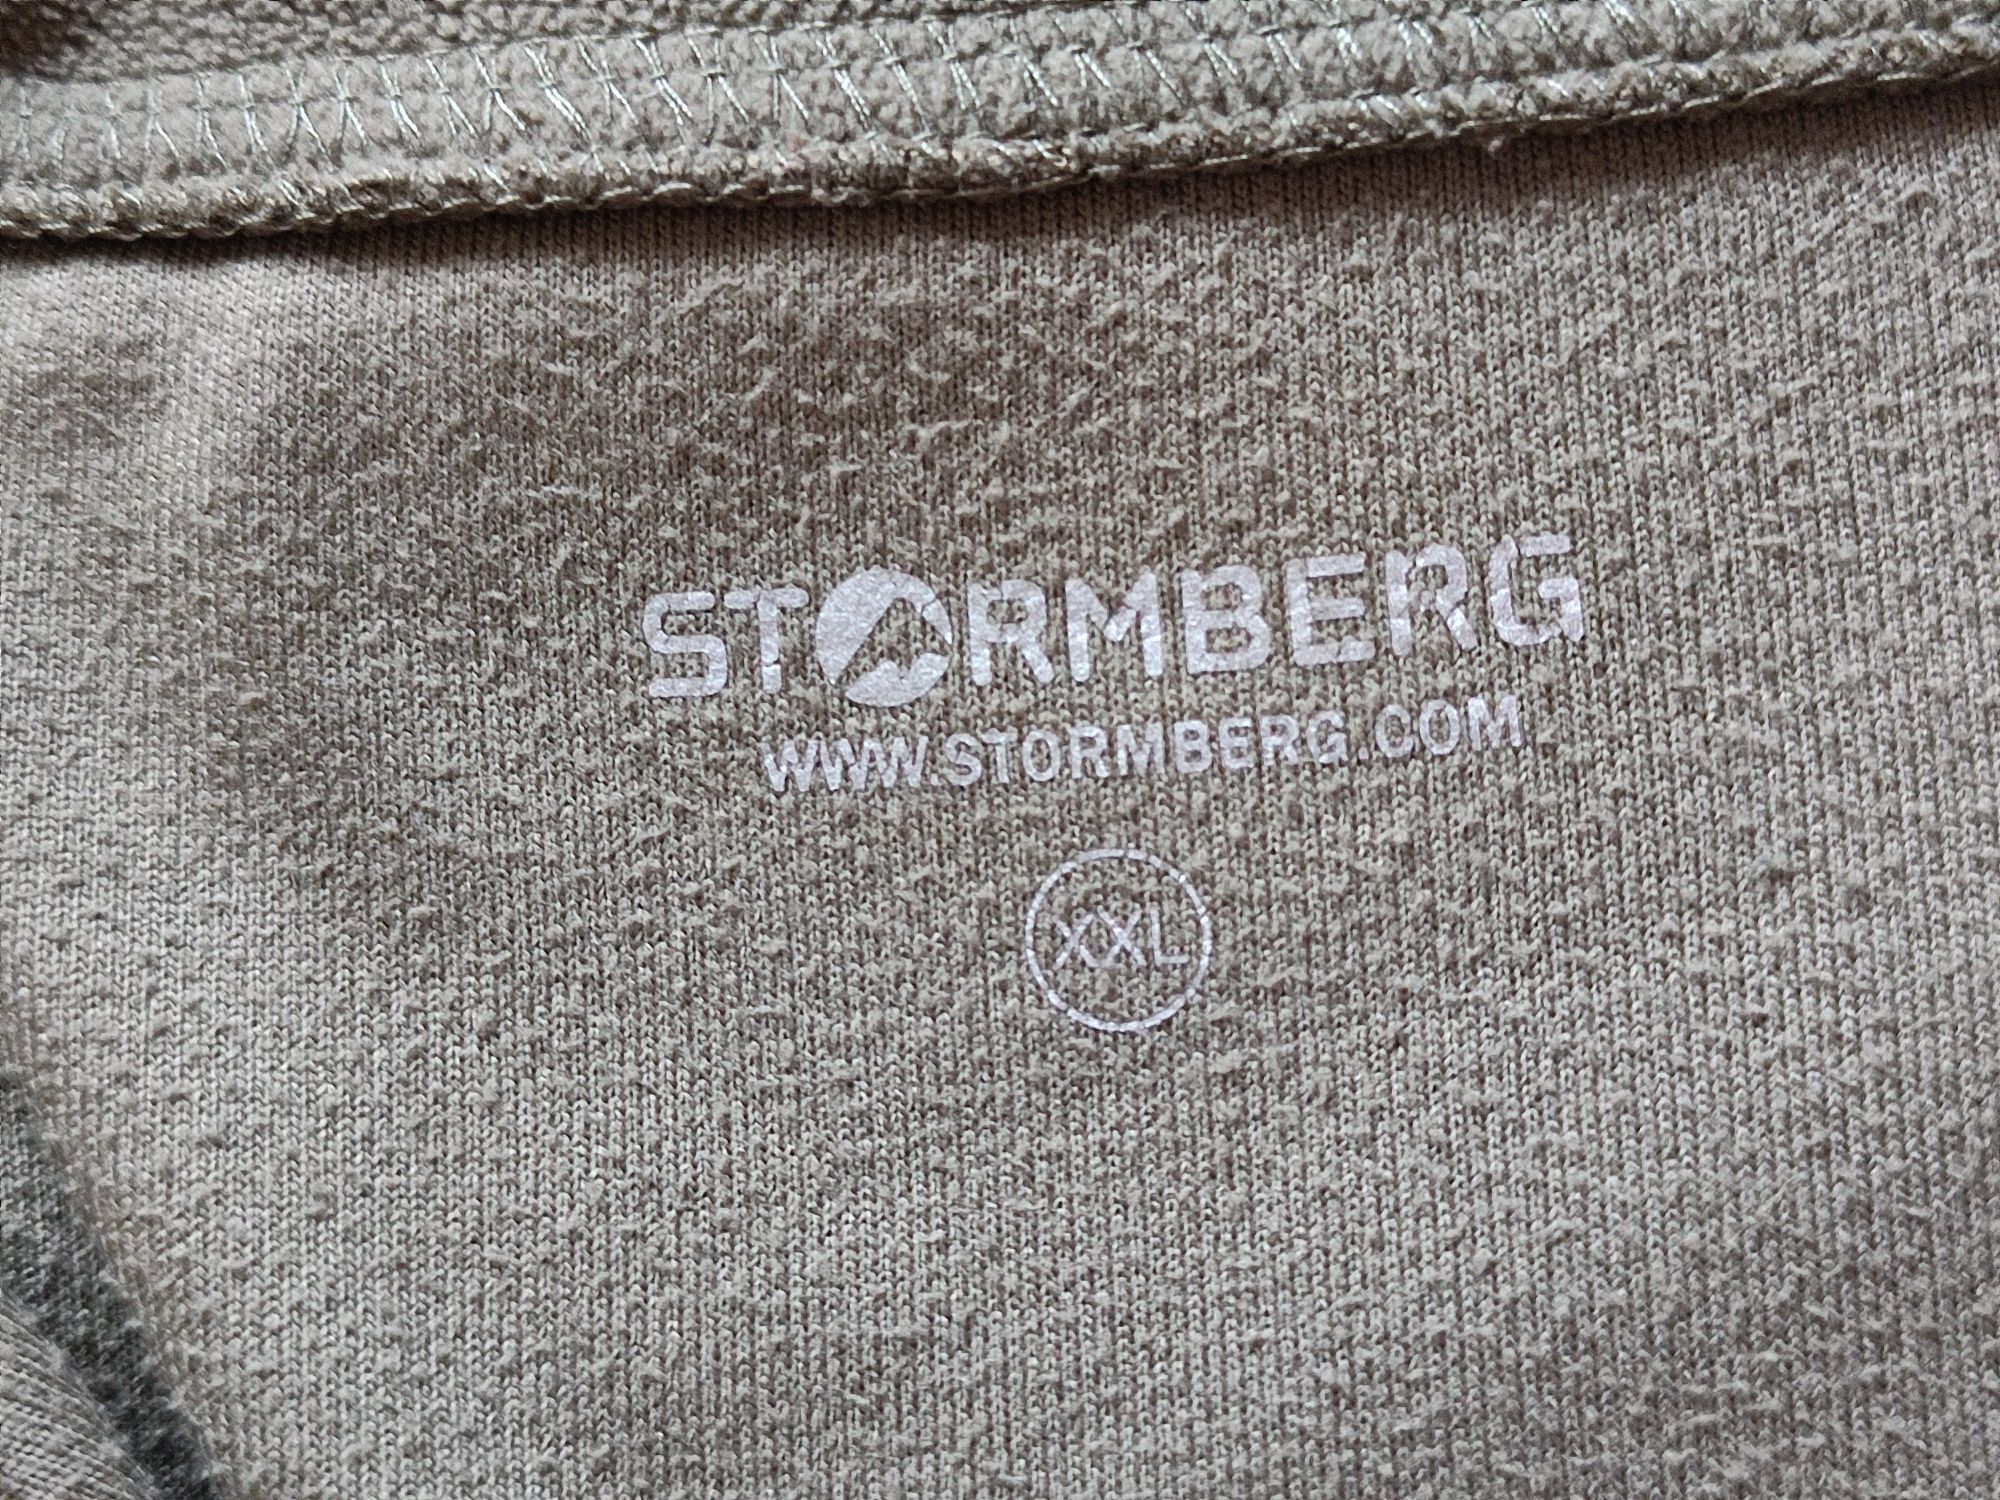 Stormberg bluza polar chusta xxl